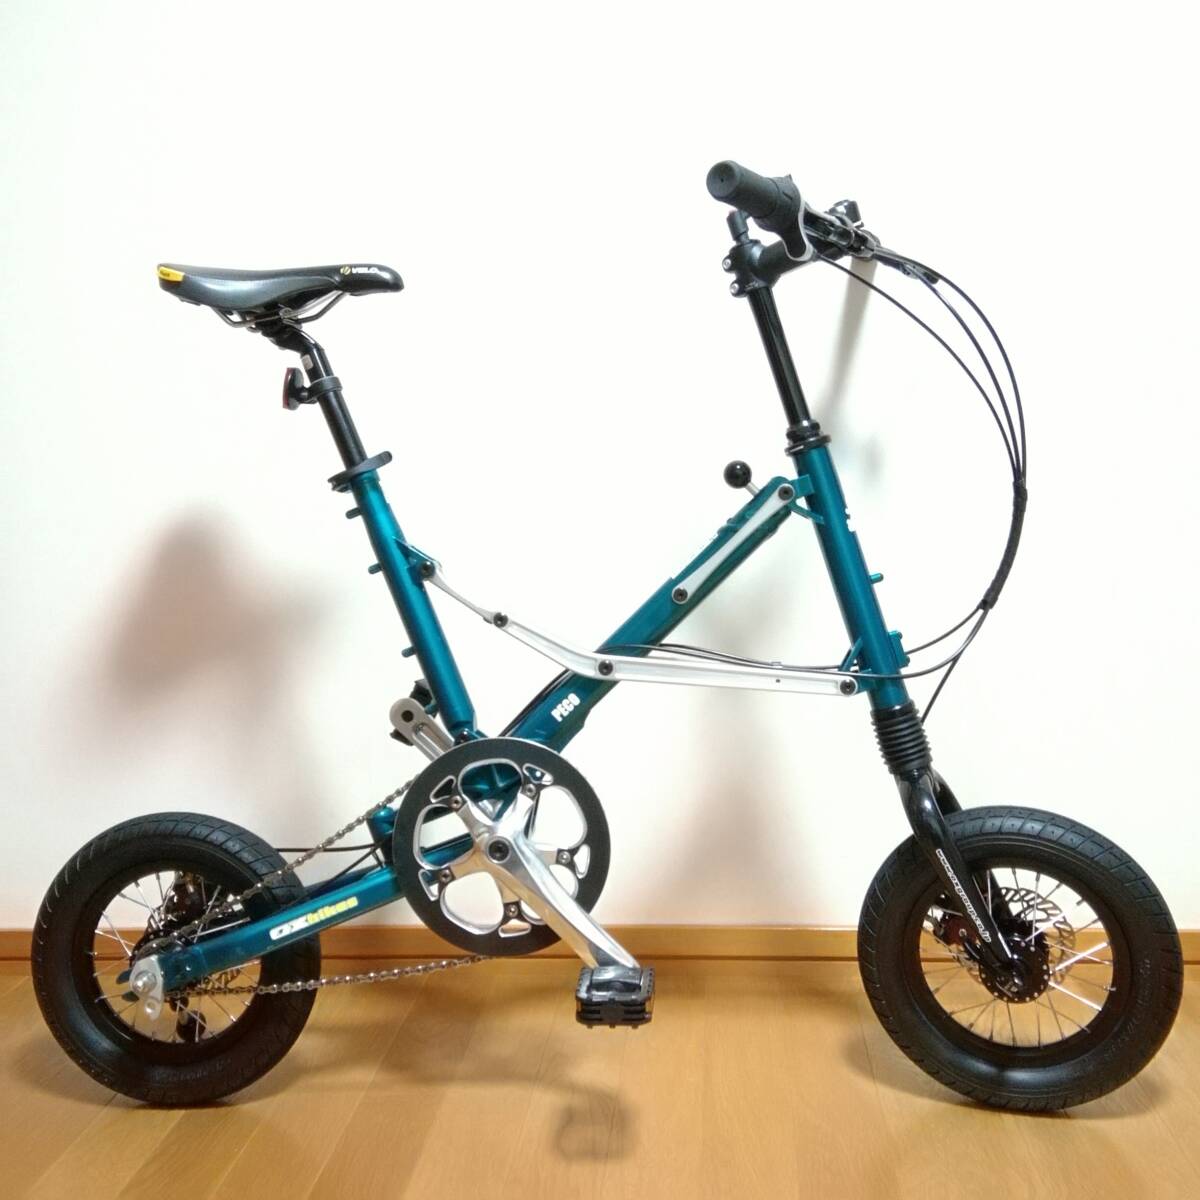 ★OX BIKES PECO 3S ペコ ■ ミニベロ 折り畳み自転車 POCCI buccho ポッチ ブッチョの画像1